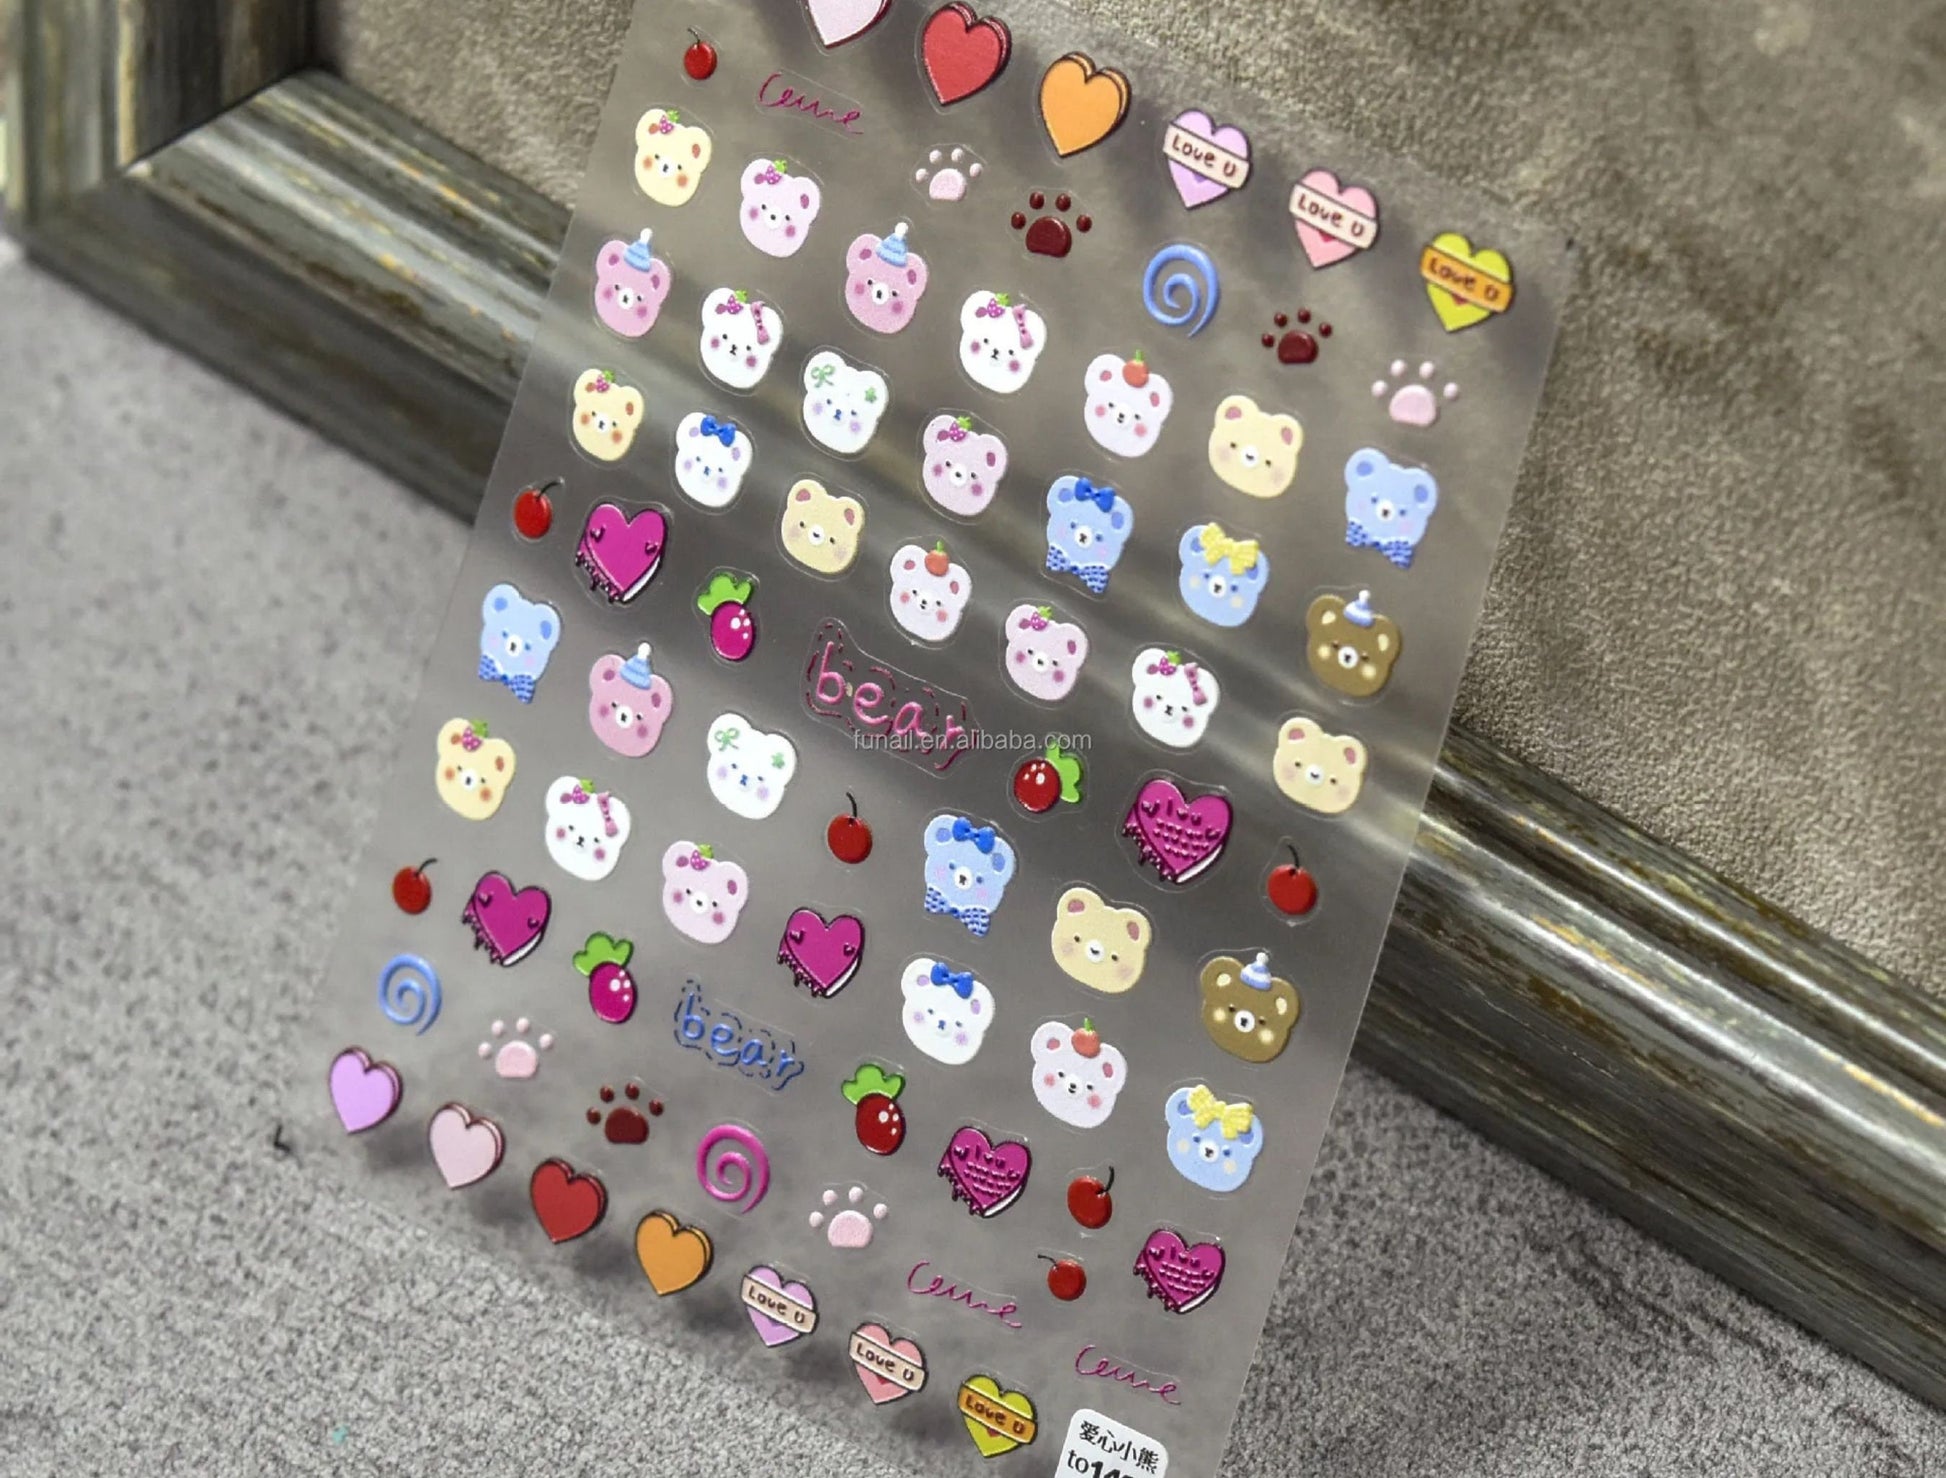 Kawaii Nail Decals, Cute Bear Nail Decals, Doodle Nail Decals, Heart Nail Decals, Kawaii Bears, Rainbow Bear Nail Stickers, Nail Stickers